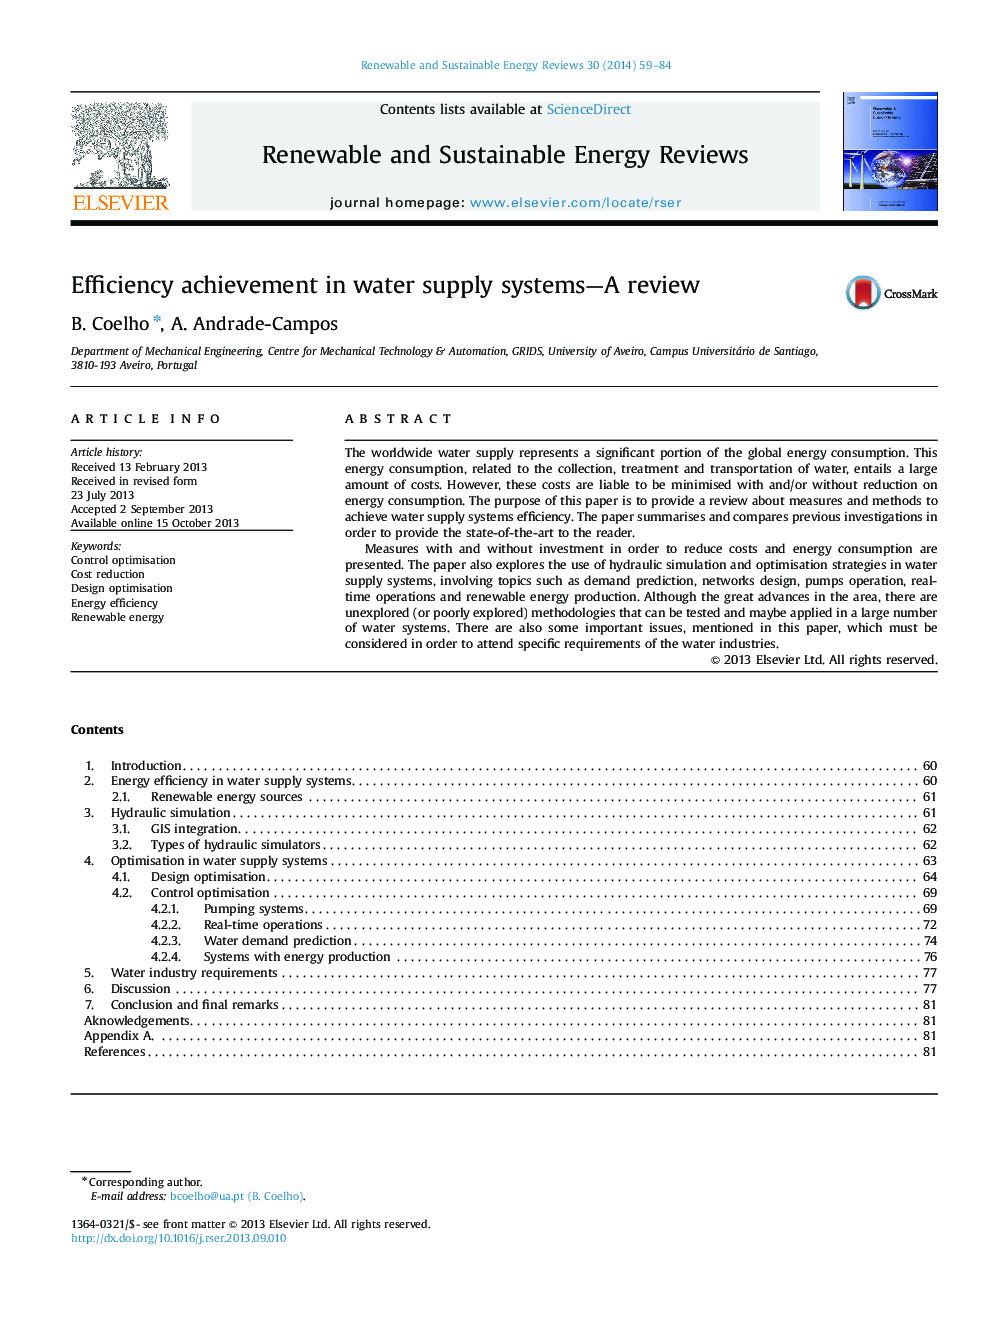 دستاورد کارایی در سیستم های تامین آب - بررسی 